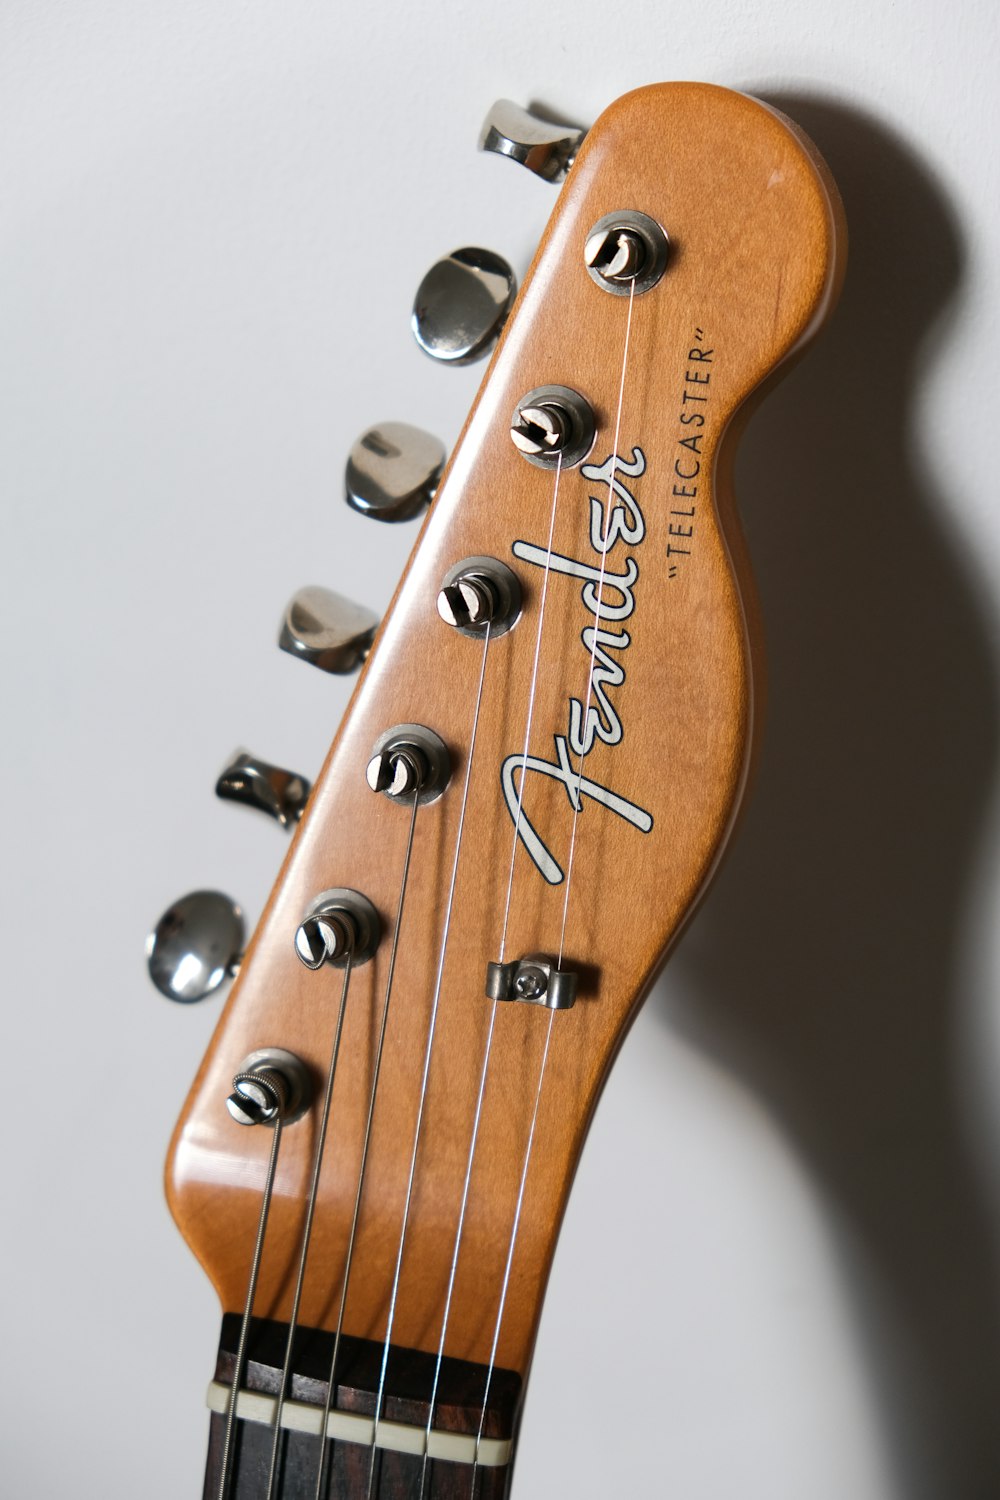 cabeçote de guitarra marrom Fender na superfície branca